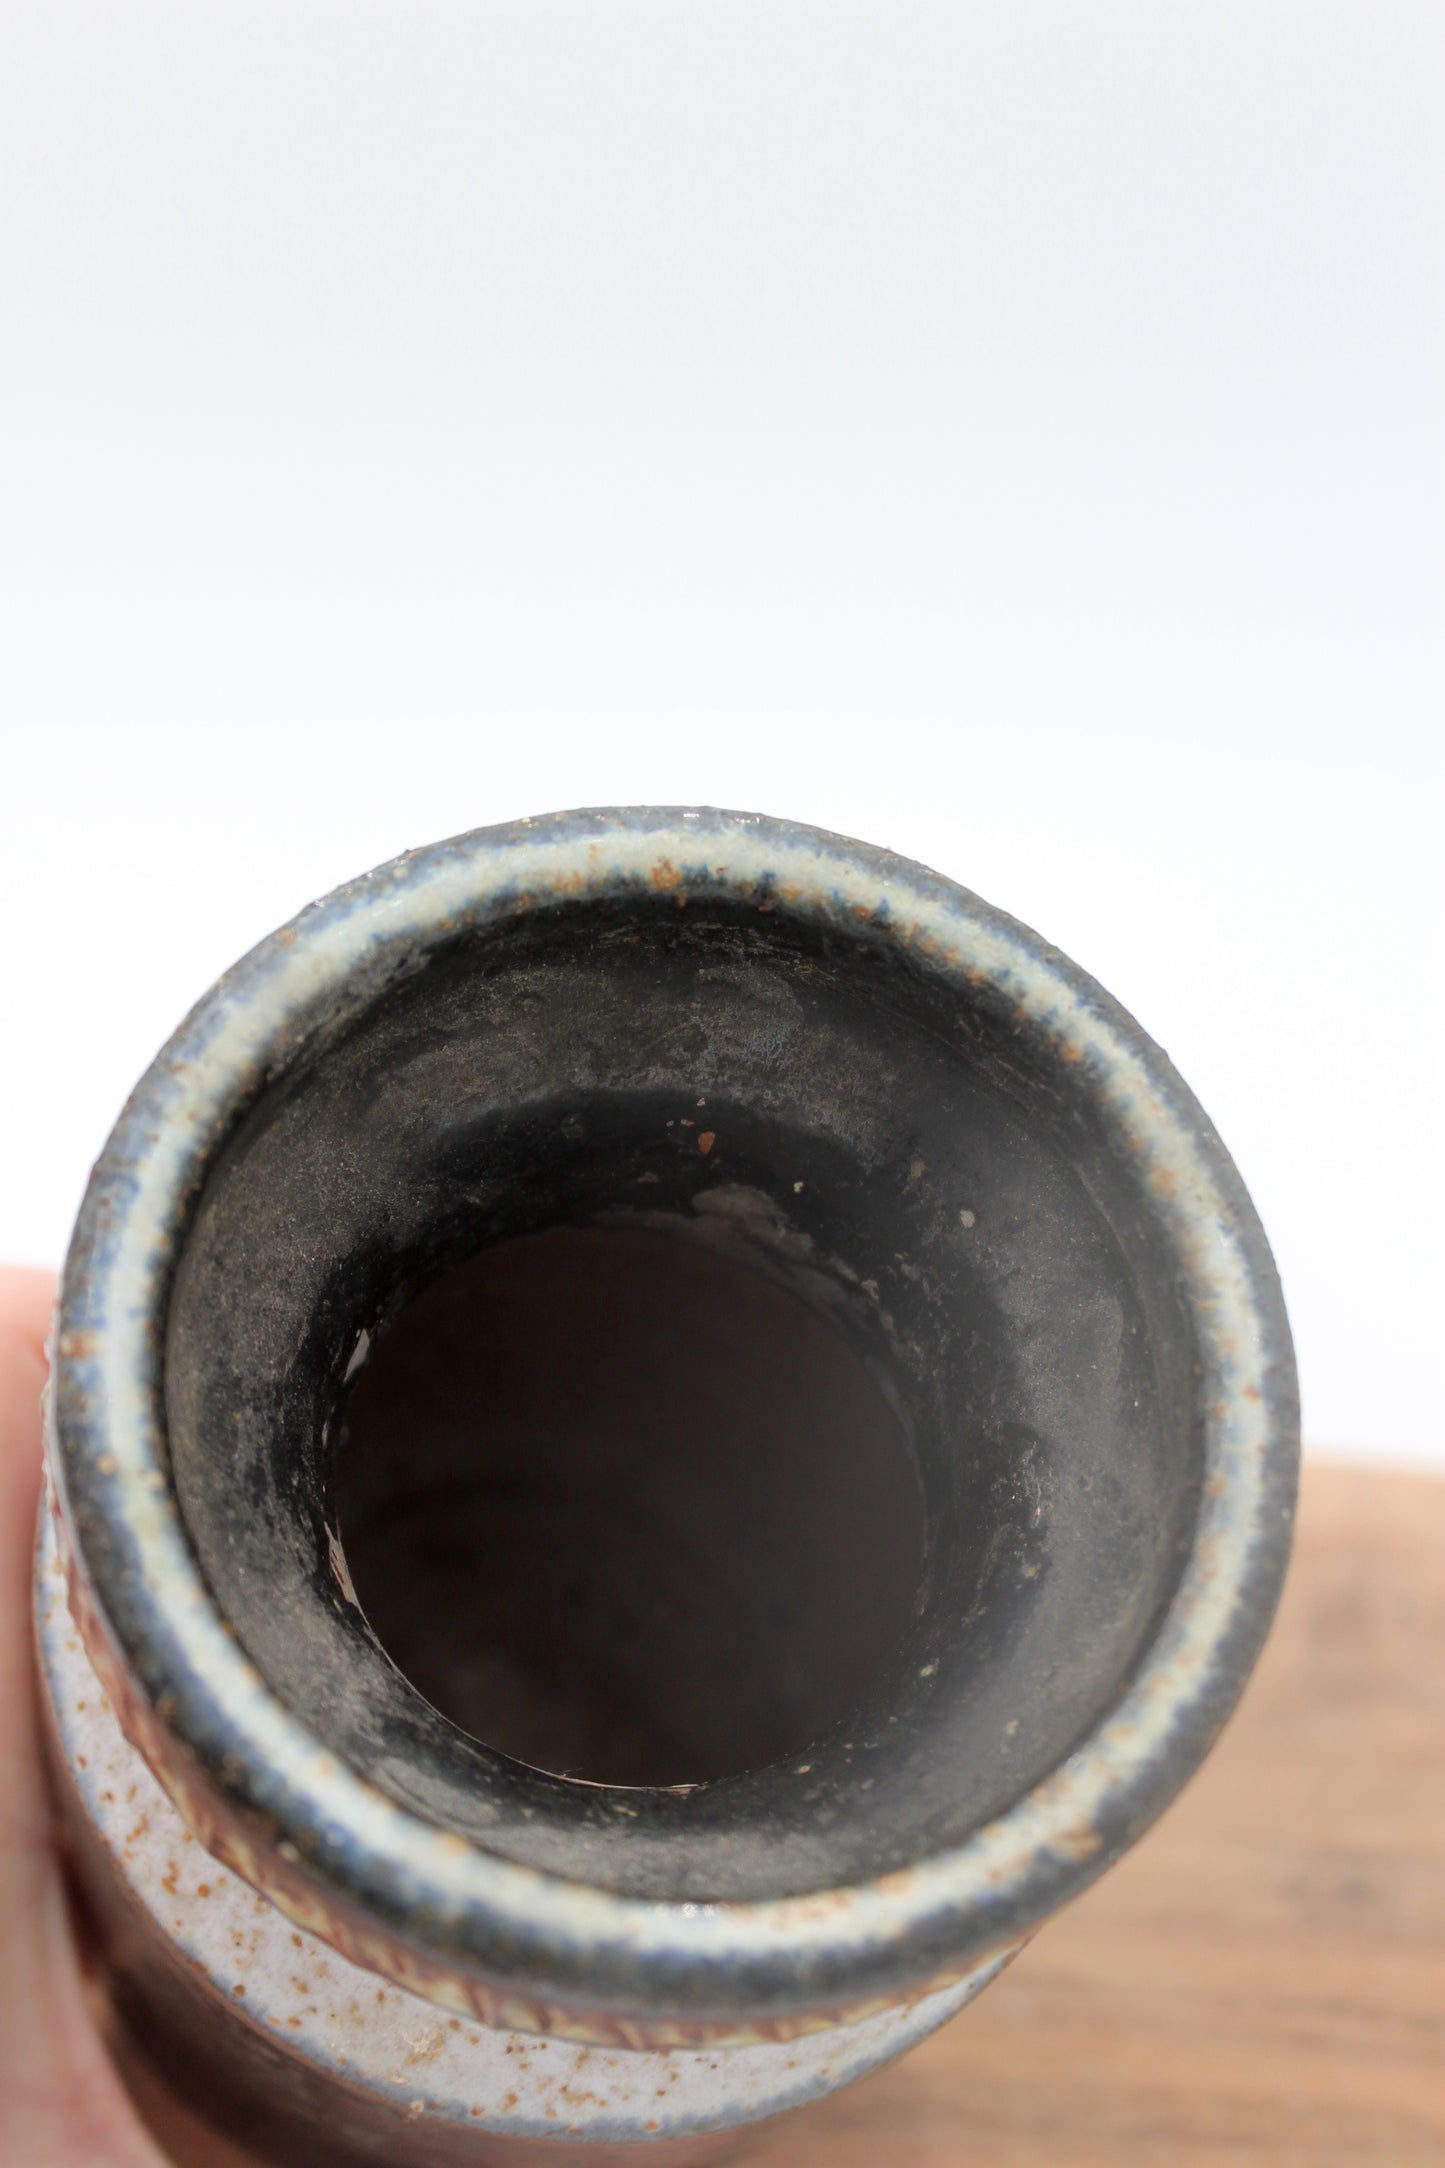 Kingo Keramik - Ceramic vase